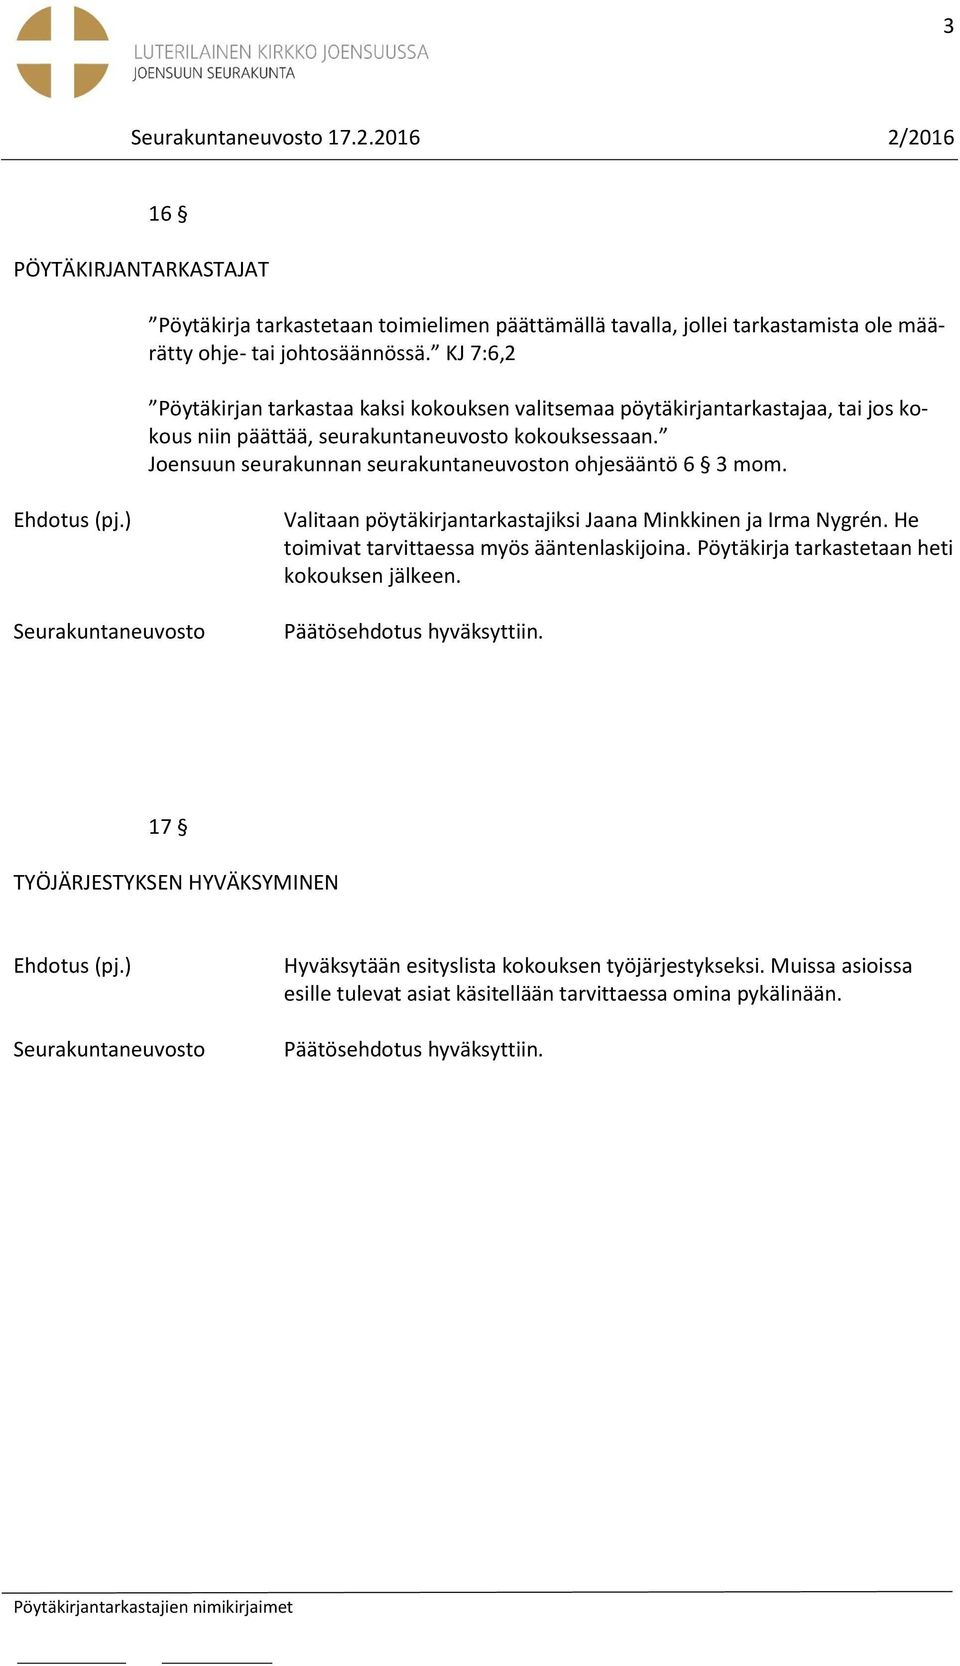 Joensuun seurakunnan seurakuntaneuvoston ohjesääntö 6 3 mom. Valitaan pöytäkirjantarkastajiksi Jaana Minkkinen ja Irma Nygrén.